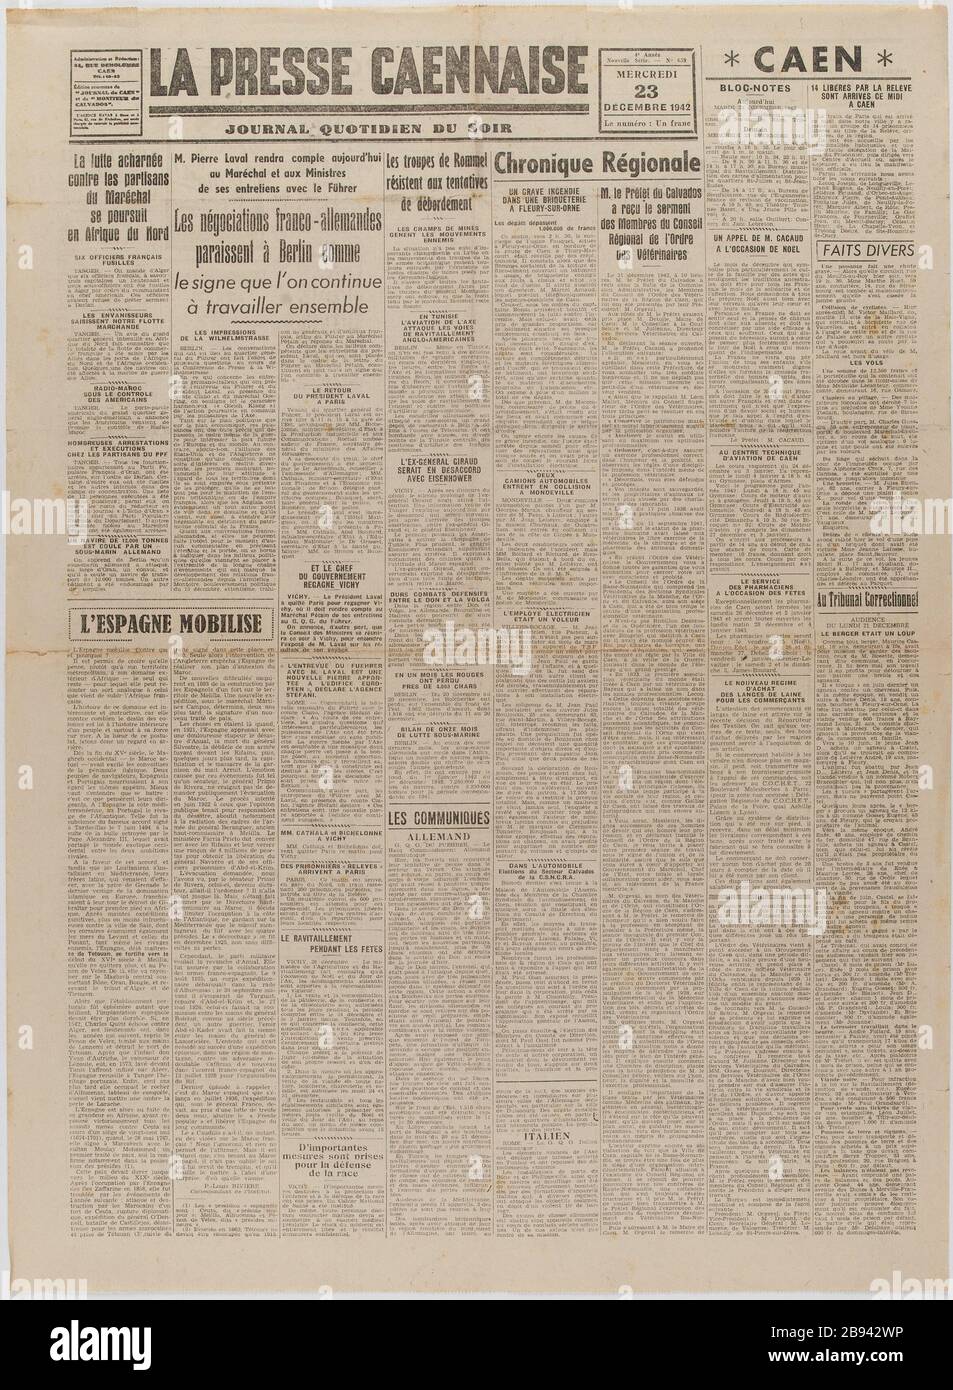 Newspaper "La Presse Caennaise" of December 23, 1942 Journal "La Presse  Caennaise" du 23 décembre 1942.